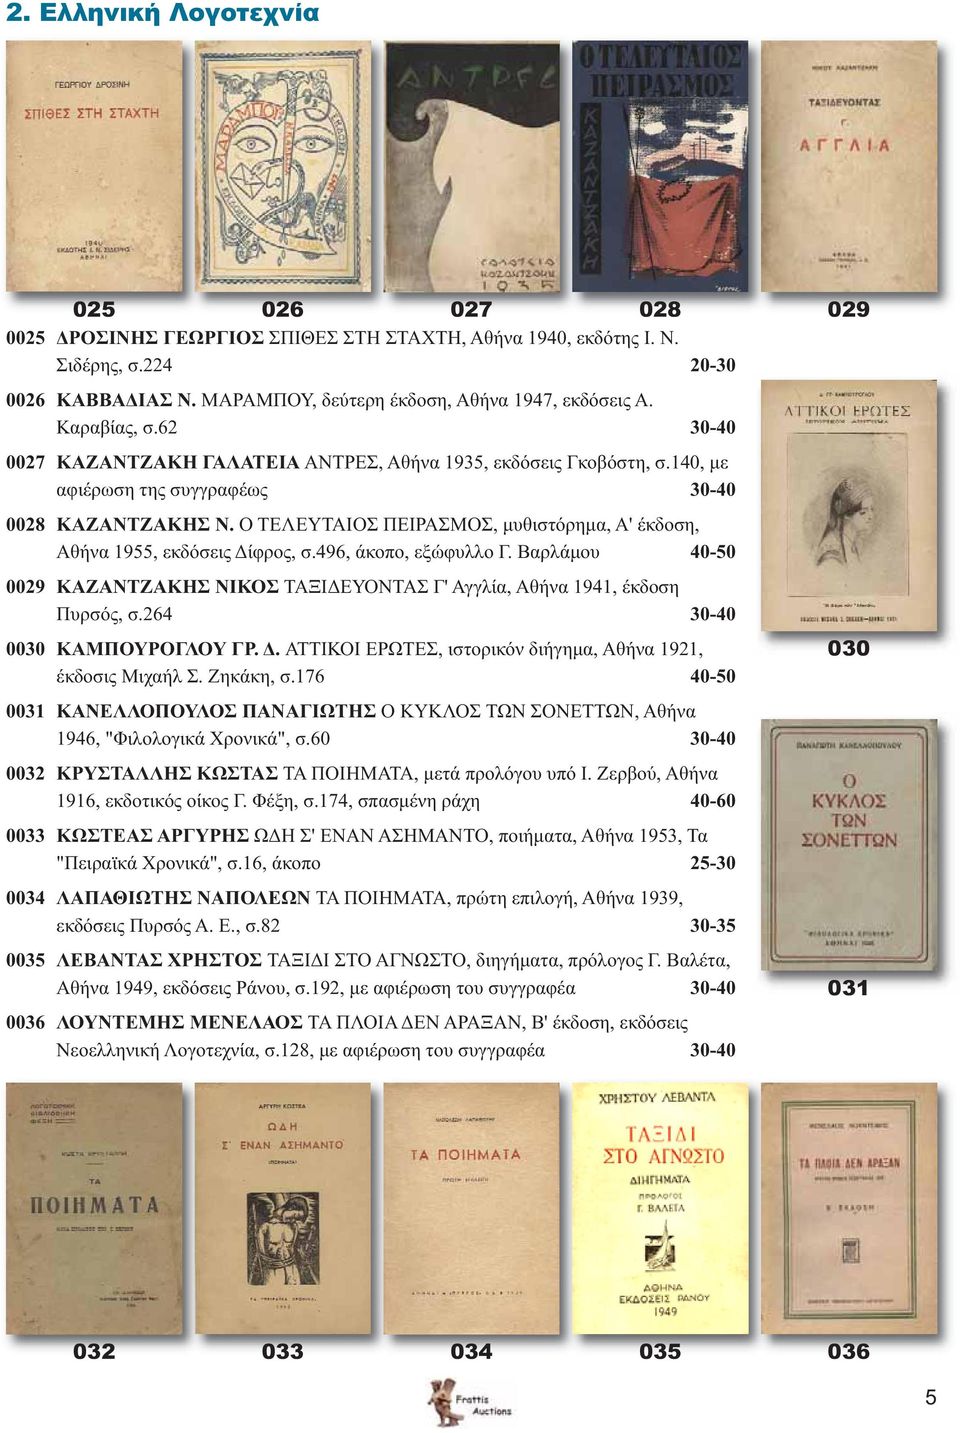 Ο ΤΕΛΕΥΤΑΙΟΣ ΠΕΙΡΑΣΜΟΣ, μυθιστόρημα, Α' έκδοση, Αθήνα 1955, εκδόσεις Δίφρος, σ.496, άκοπο, εξώφυλλο Γ. Βαρλάμου 40-50 0029 ΚΑΖΑΝΤΖΑΚΗΣ ΝΙΚΟΣ ΤΑΞΙΔΕΥΟΝΤΑΣ Γ' Αγγλία, Αθήνα 1941, έκδοση Πυρσός, σ.